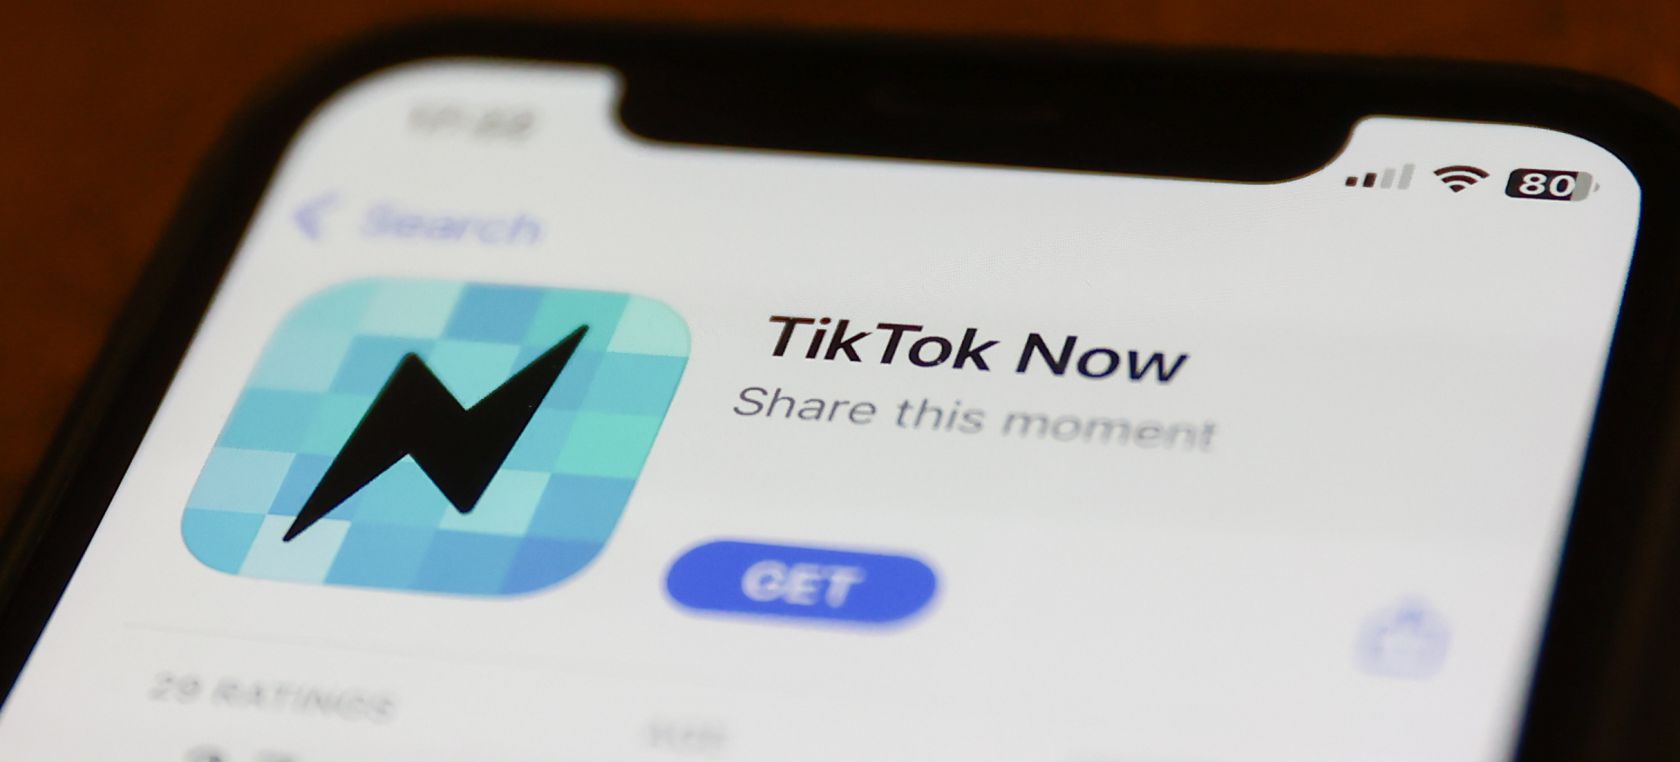 Tik Tok Now regalará dinero a los nuevos usuarios